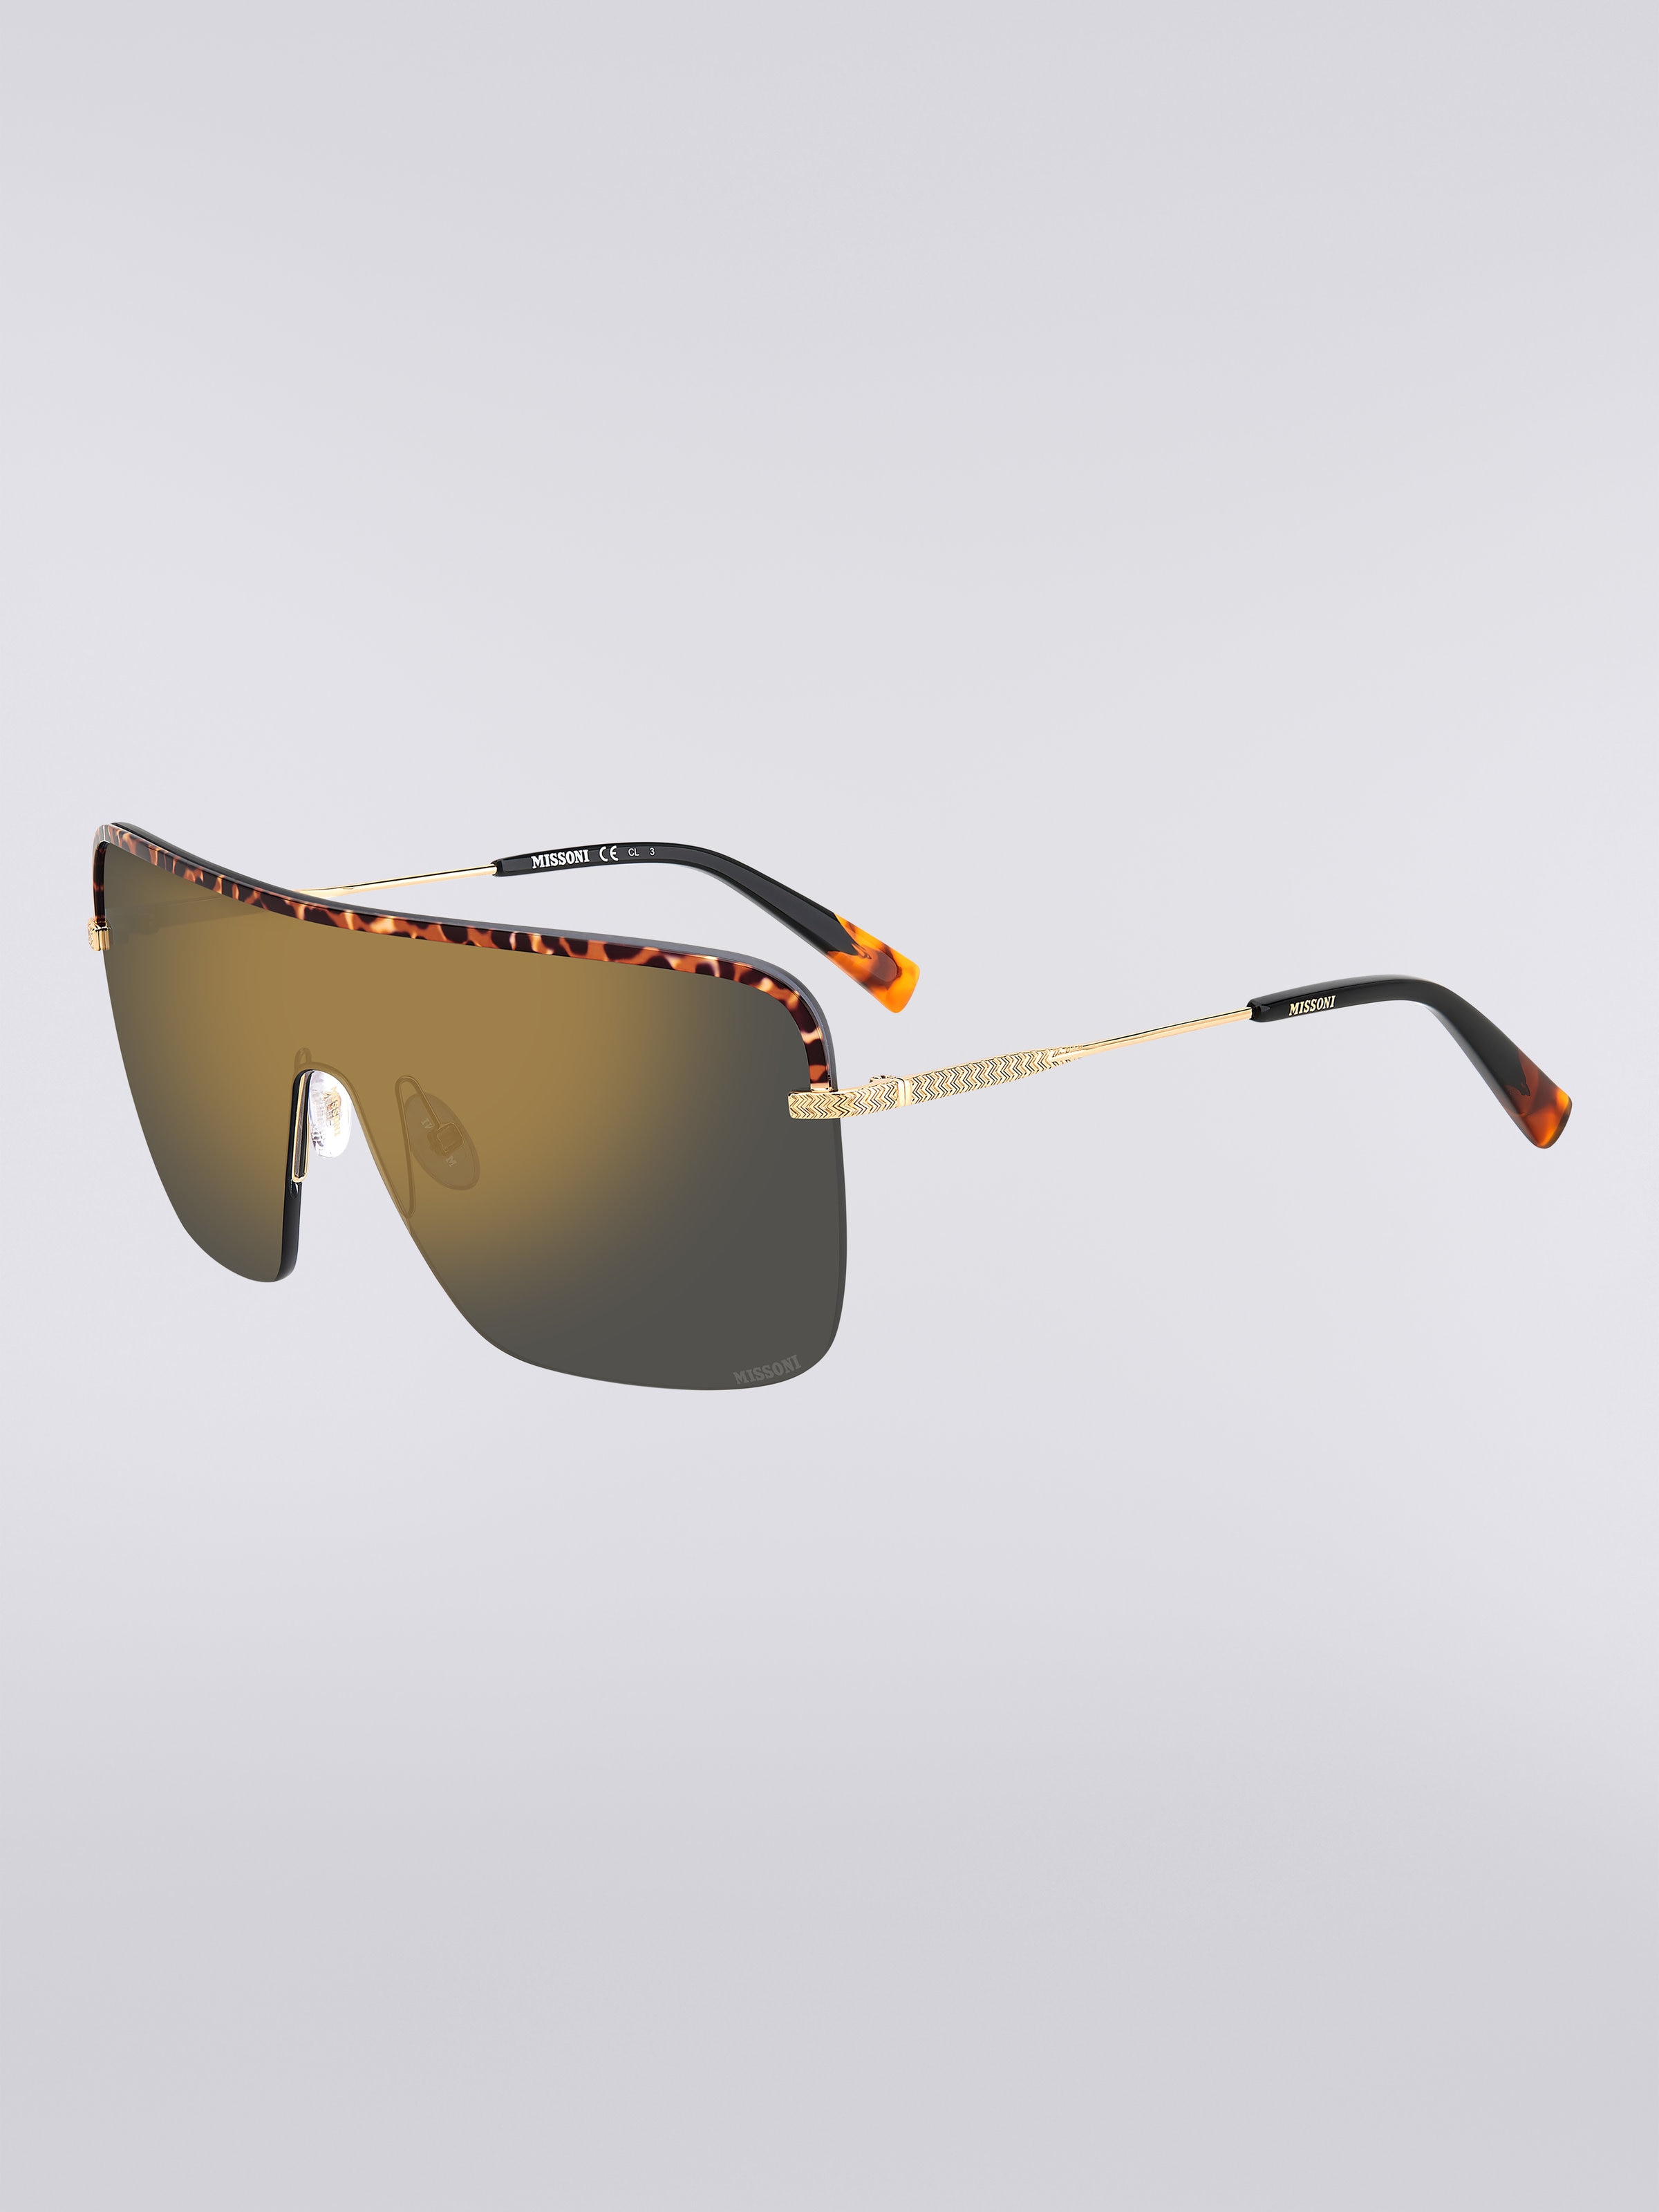 Missoni Seasonal Metal Sunglasses, Multicoloured  - 1